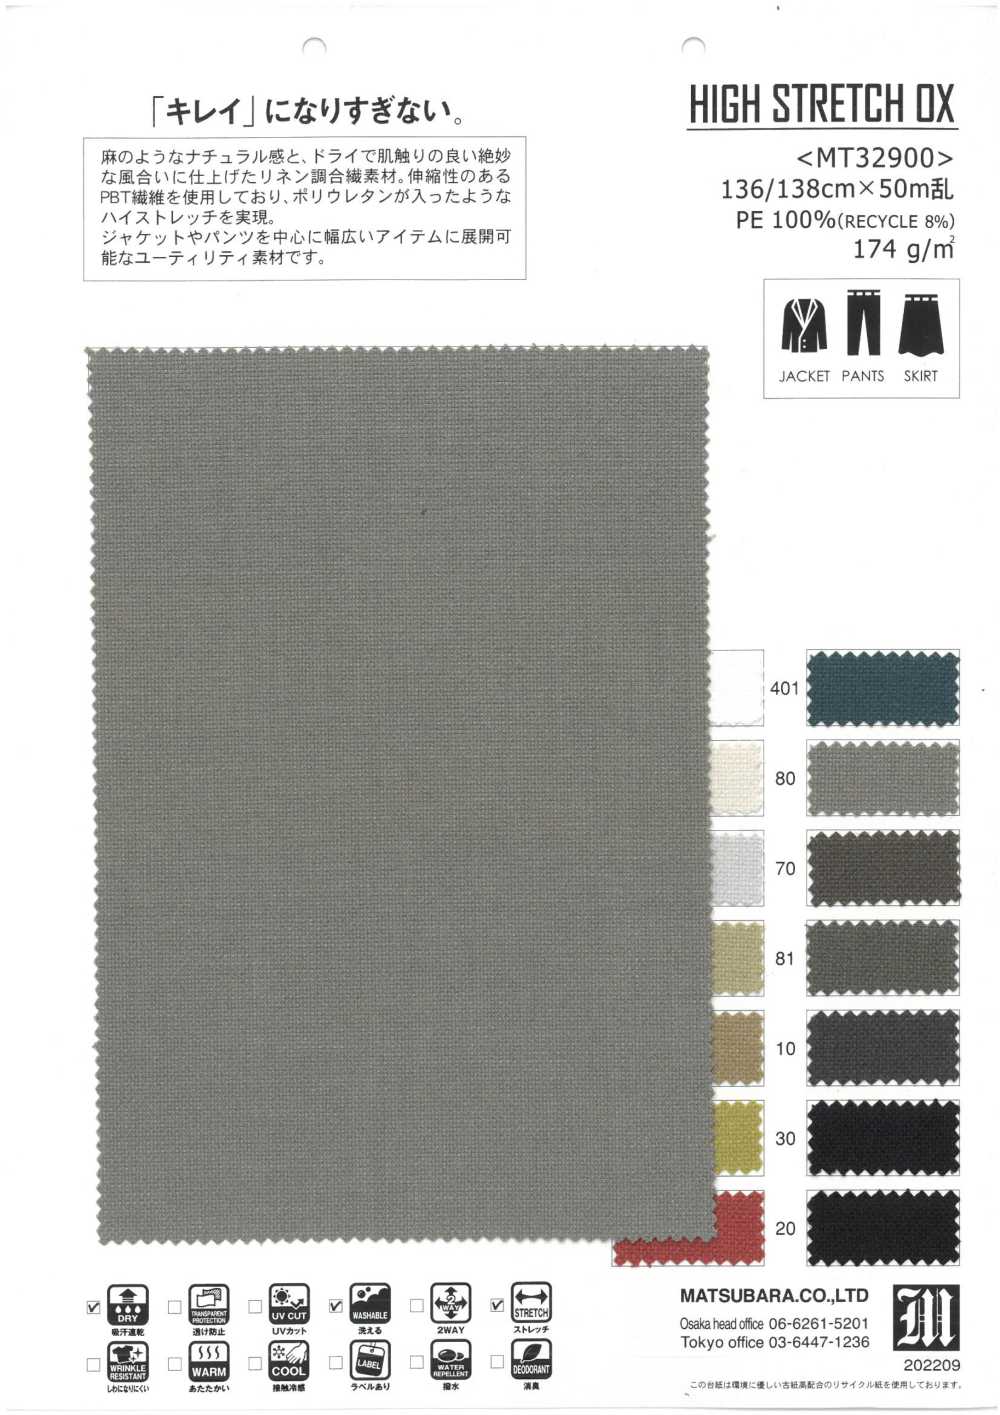 MT32900 HIGH STRETCH OX[Textilgewebe] Matsubara